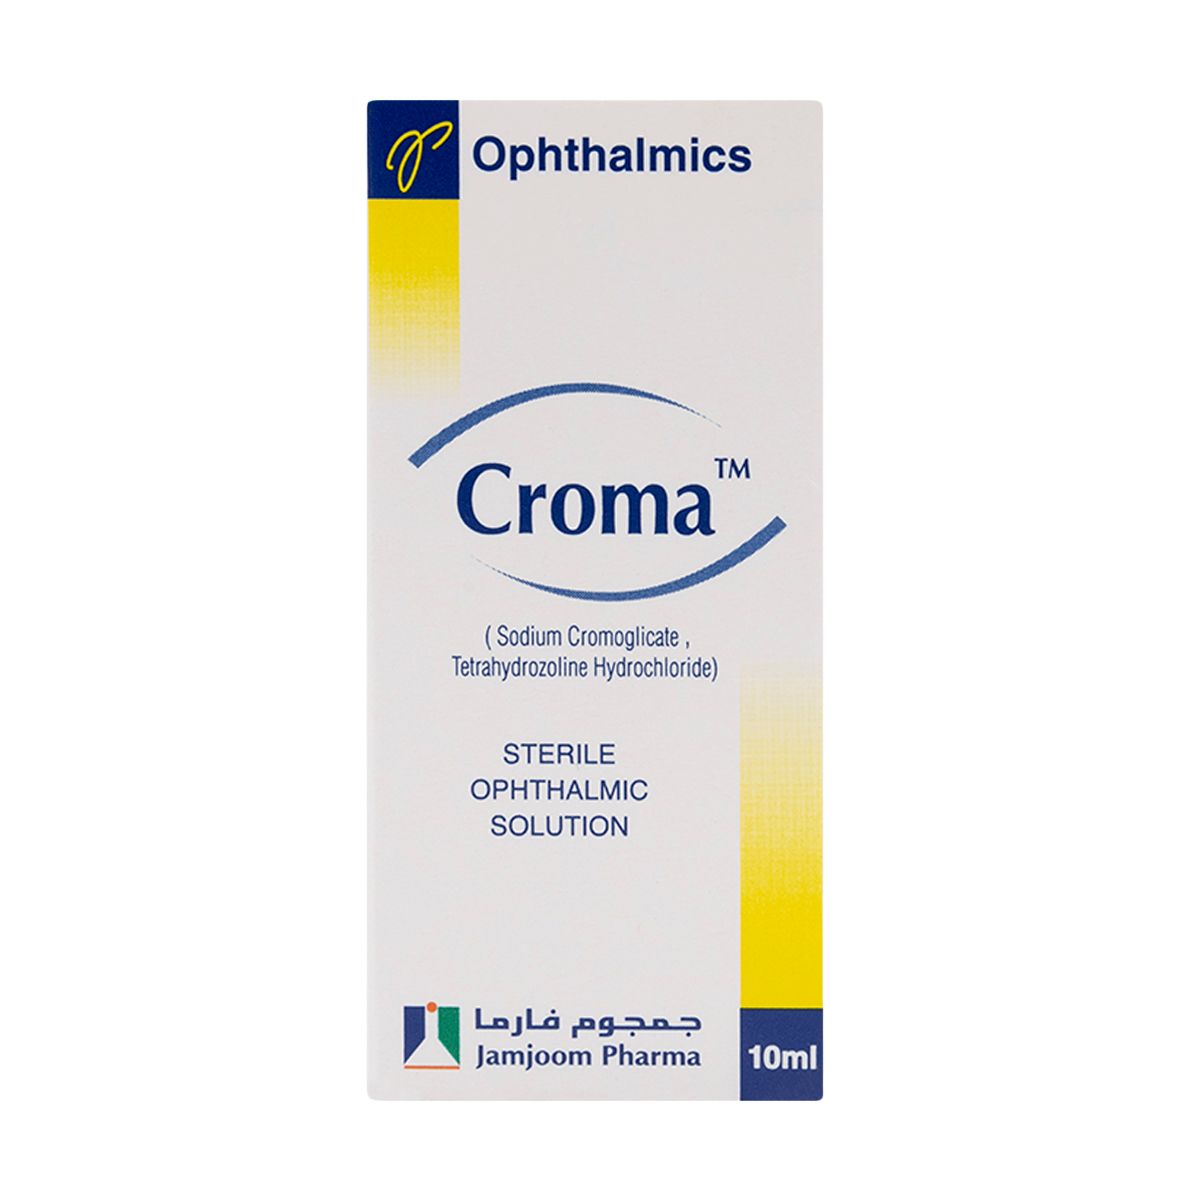 CROMA Croma Eye Drop 10ml